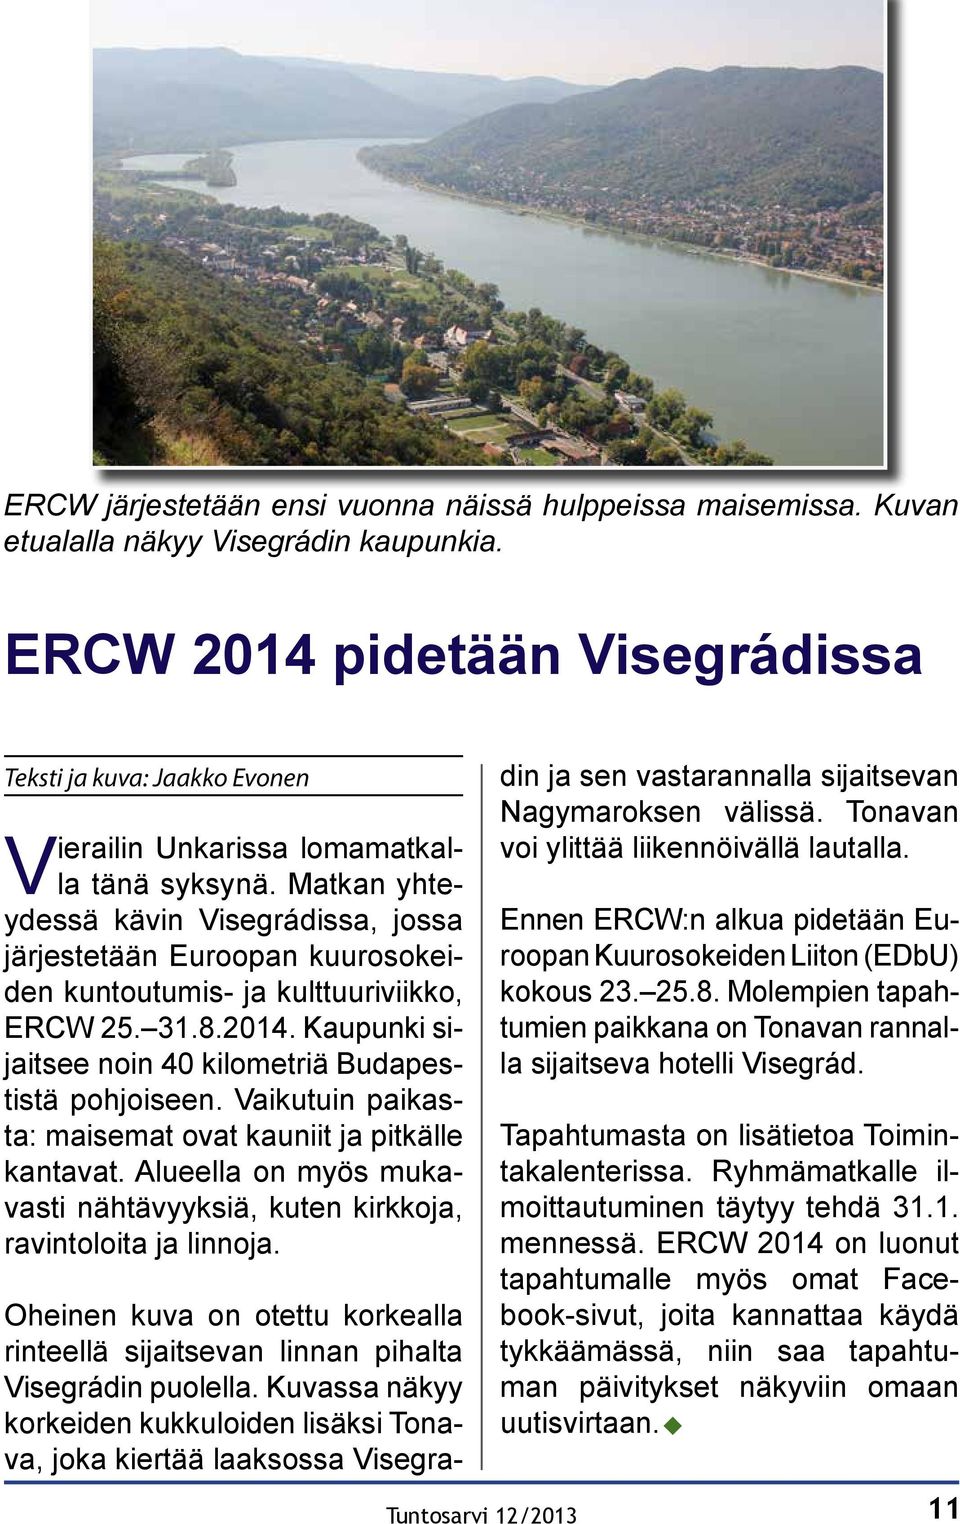 Matkan yhteydessä kävin Visegrádissa, jossa järjestetään Euroopan kuurosokeiden kuntoutumis- ja kulttuuriviikko, ERCW 25. 31.8.2014. Kaupunki sijaitsee noin 40 kilometriä Budapestistä pohjoiseen.